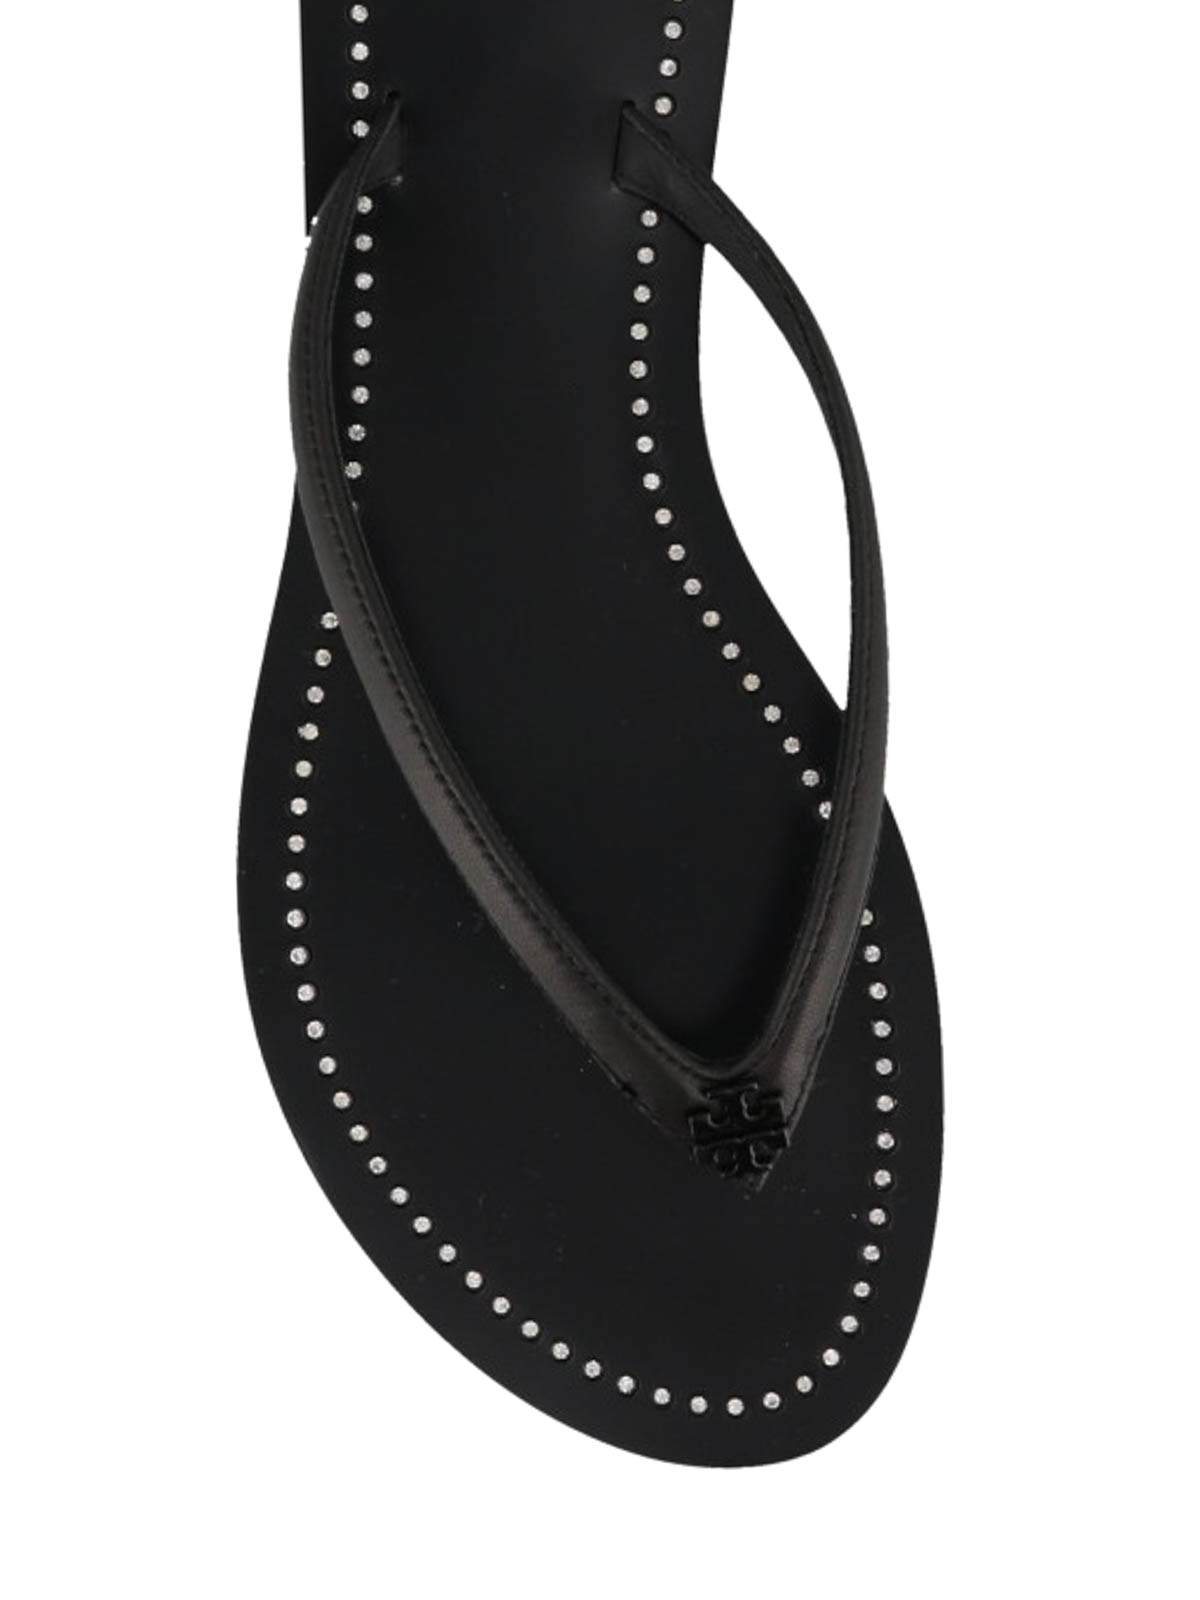 indeks Moralsk uddannelse Aske Sandals Tory Burch - Crystal embellished black thong sandals - 53036006